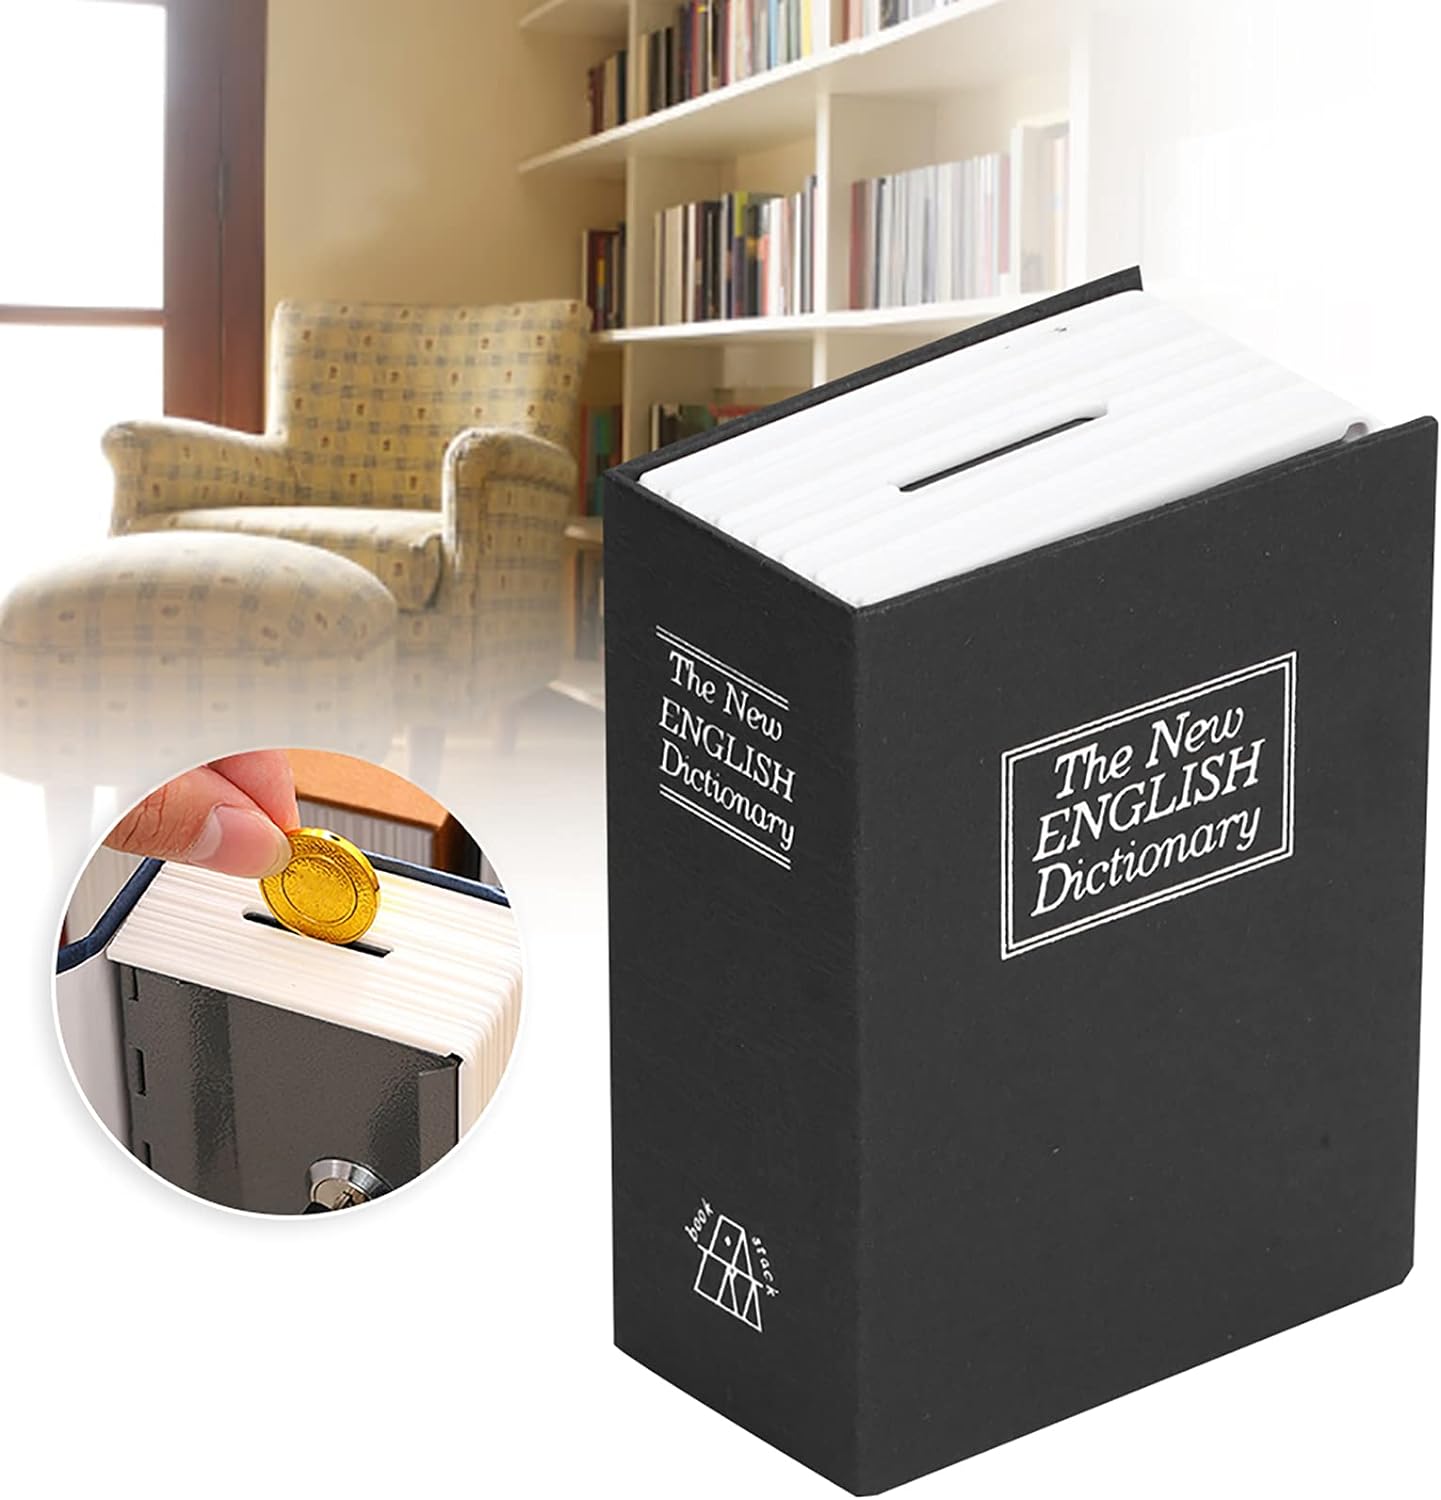 Joyero, caja de seguridad duradera y cómoda con forma de libro para guardar